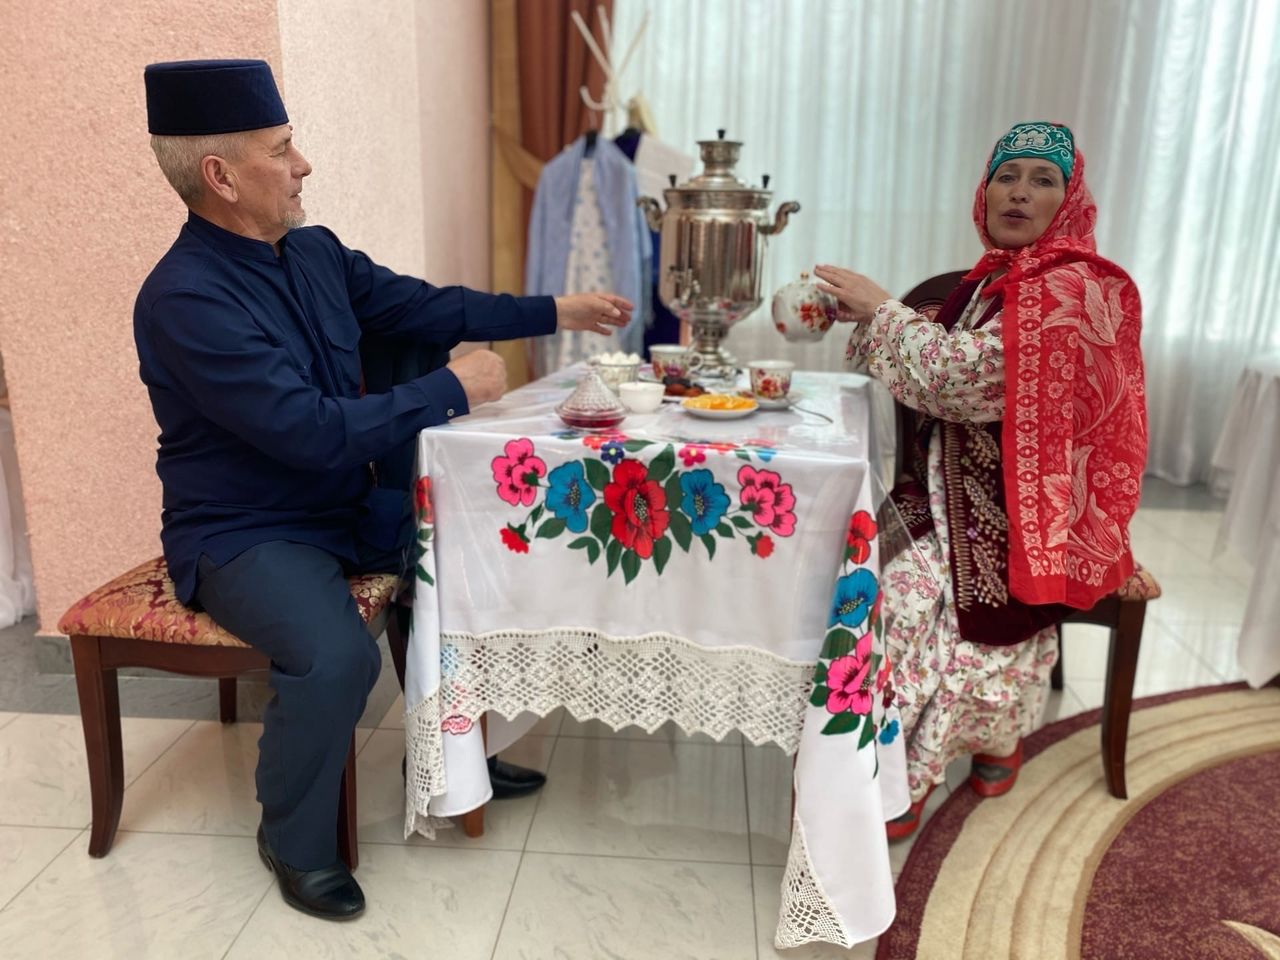 Мамадышская невеста устроила в ЗАГСе девичник по татарским традициям